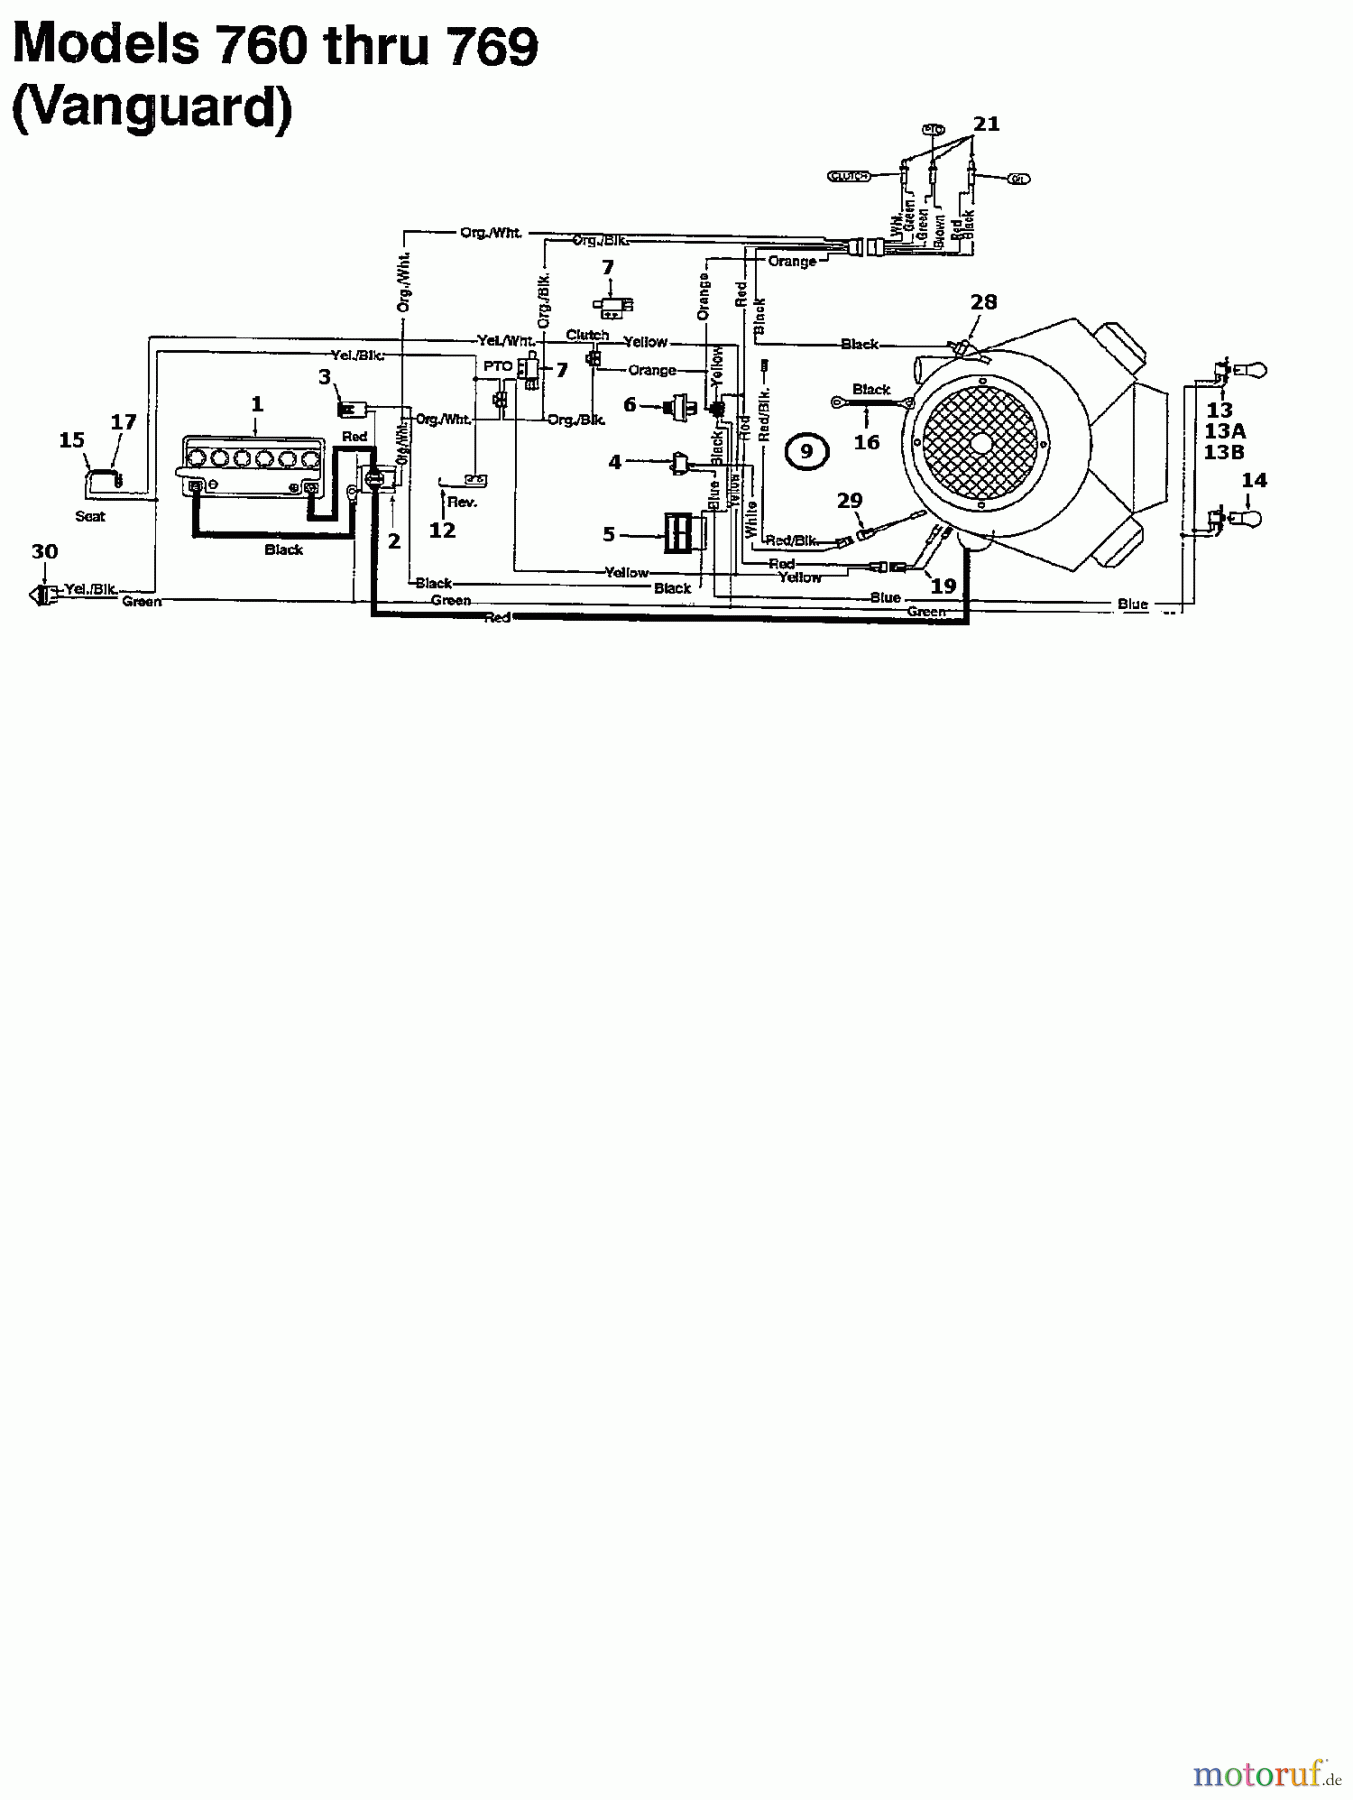  Columbia Rasentraktoren 125/102 135K761N626  (1995) Schaltplan Vanguard